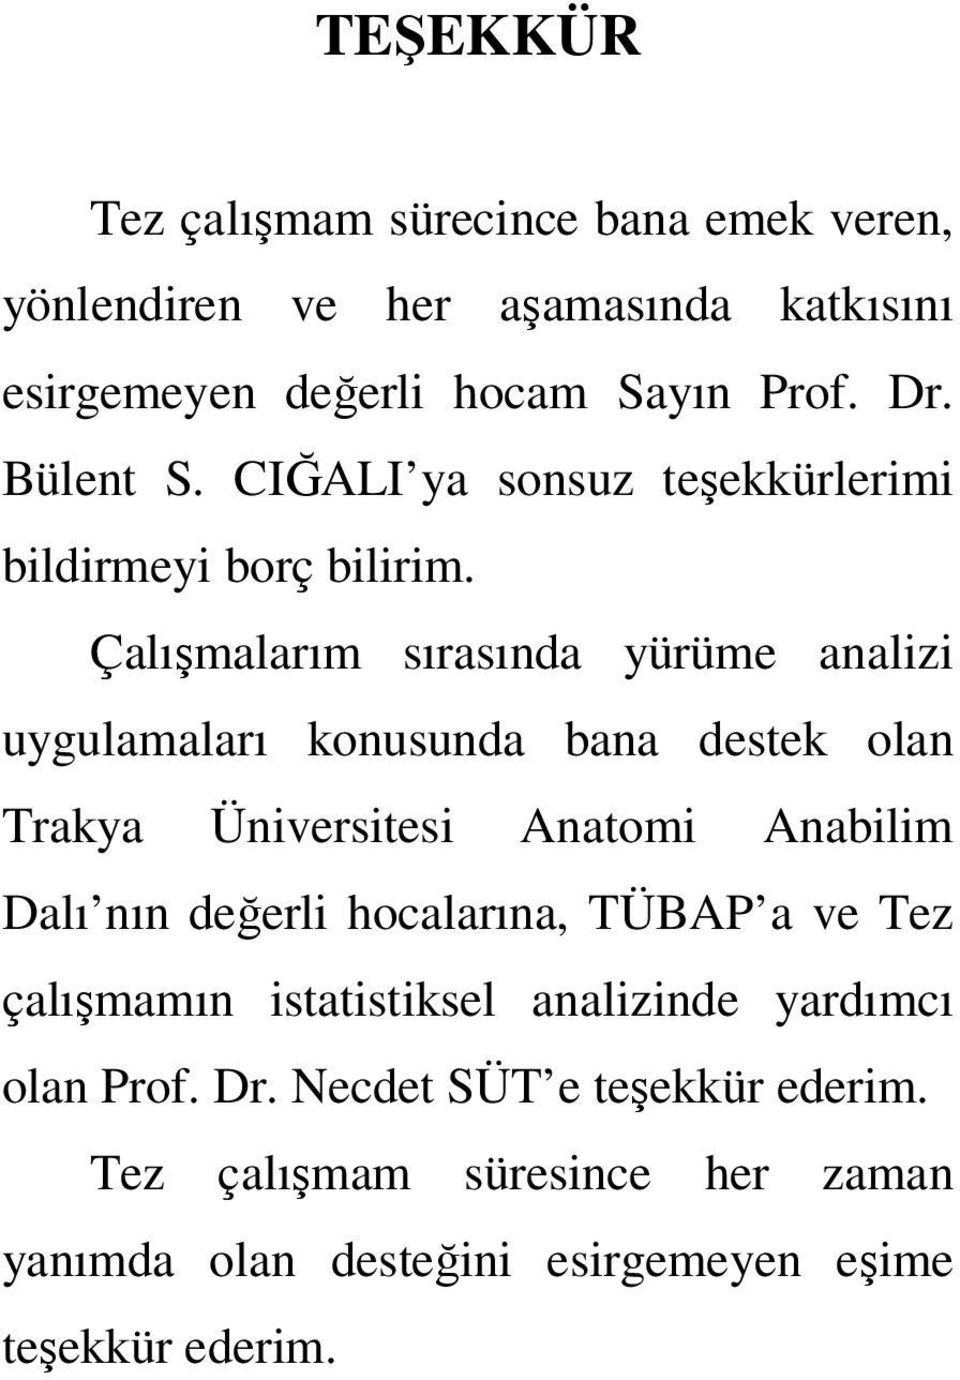 Çalışmalarım sırasında yürüme analizi uygulamaları konusunda bana destek olan Trakya Üniversitesi Anatomi Anabilim Dalı nın değerli